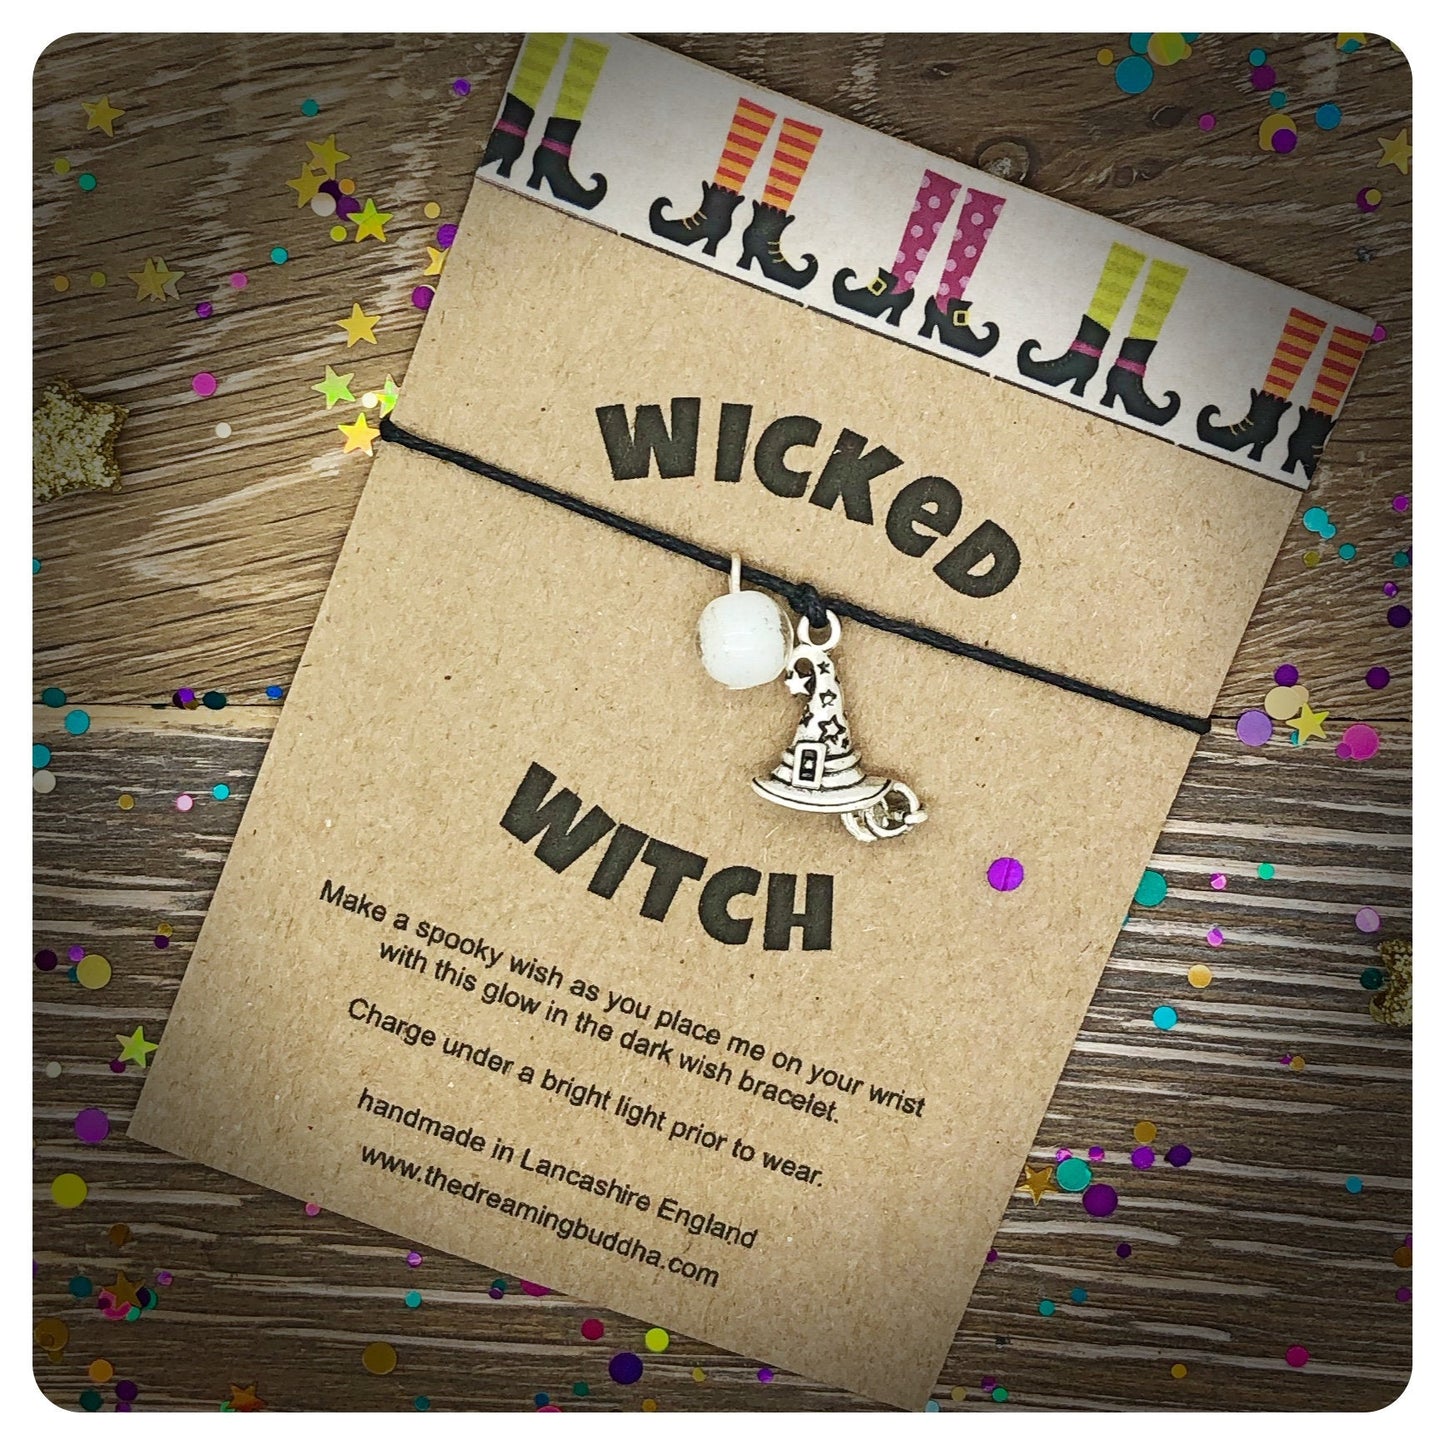 Wicked Witch Wish Bracelet, Glow in the Dark Bracelet, Witch Halloween Gift, Magical Glow Bracelet, Wicked Witch Jewellery